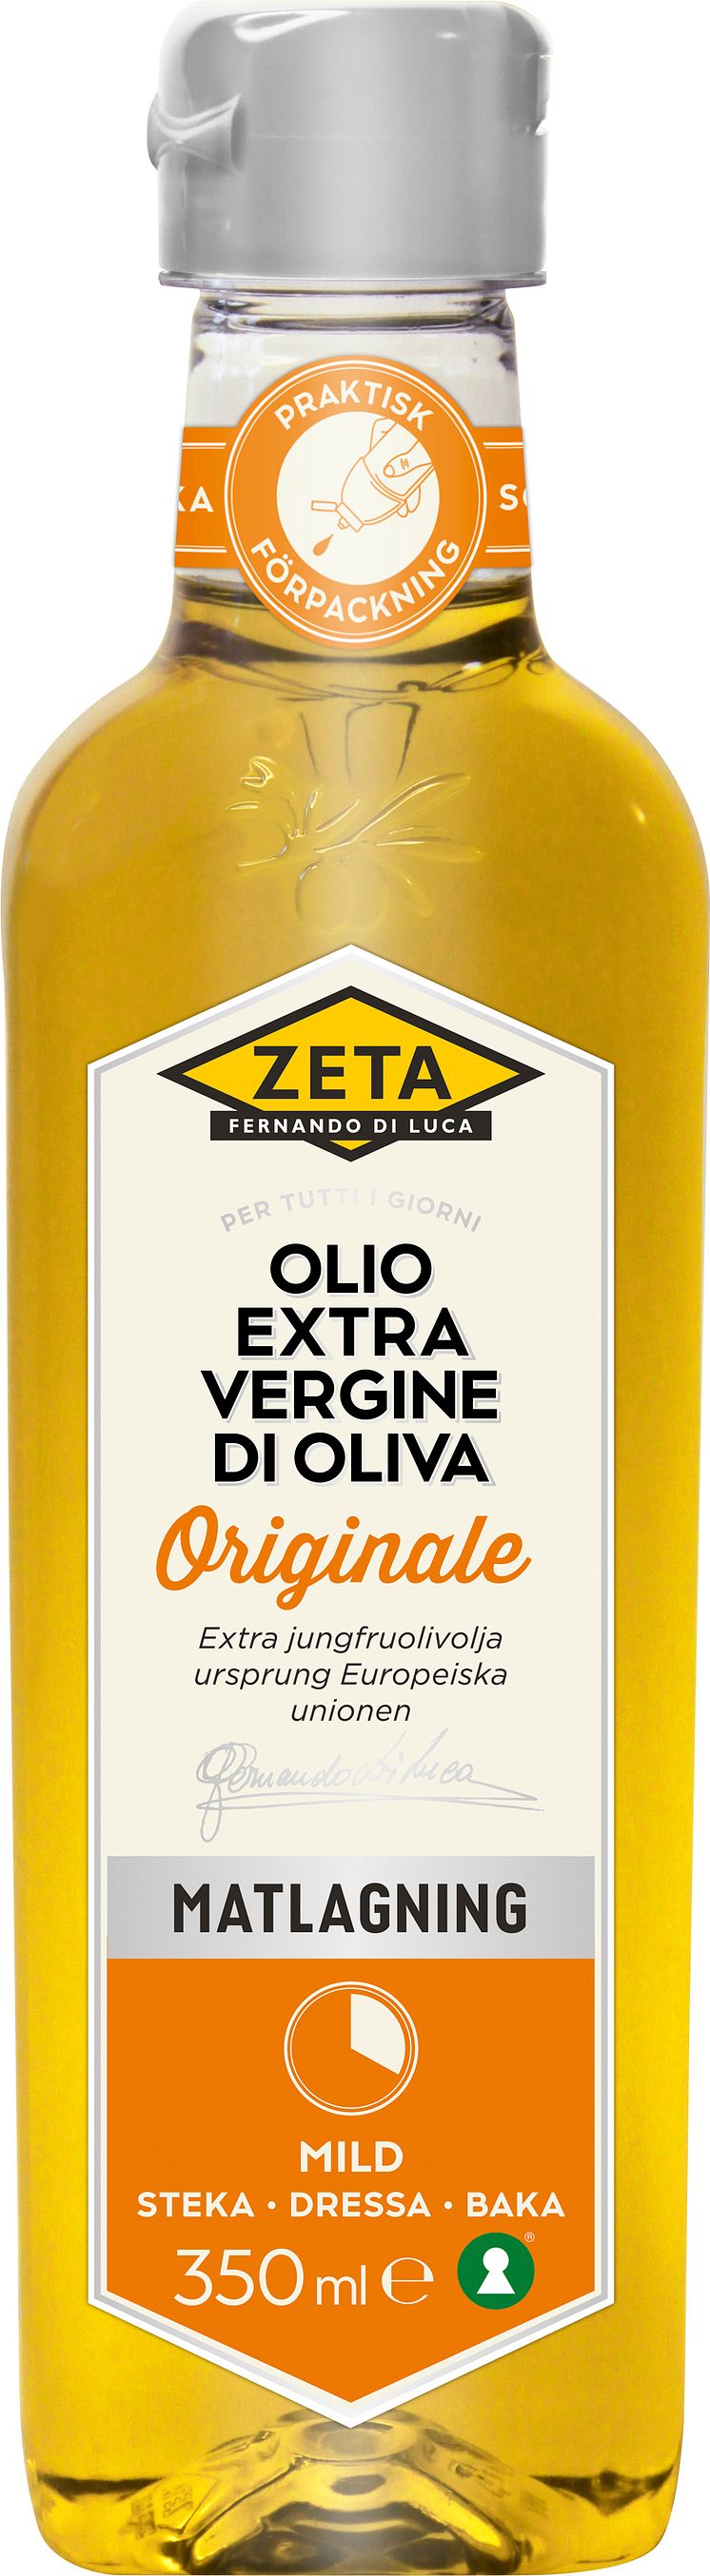 Produktbild Zeta Orginale Squeeze 350 ml